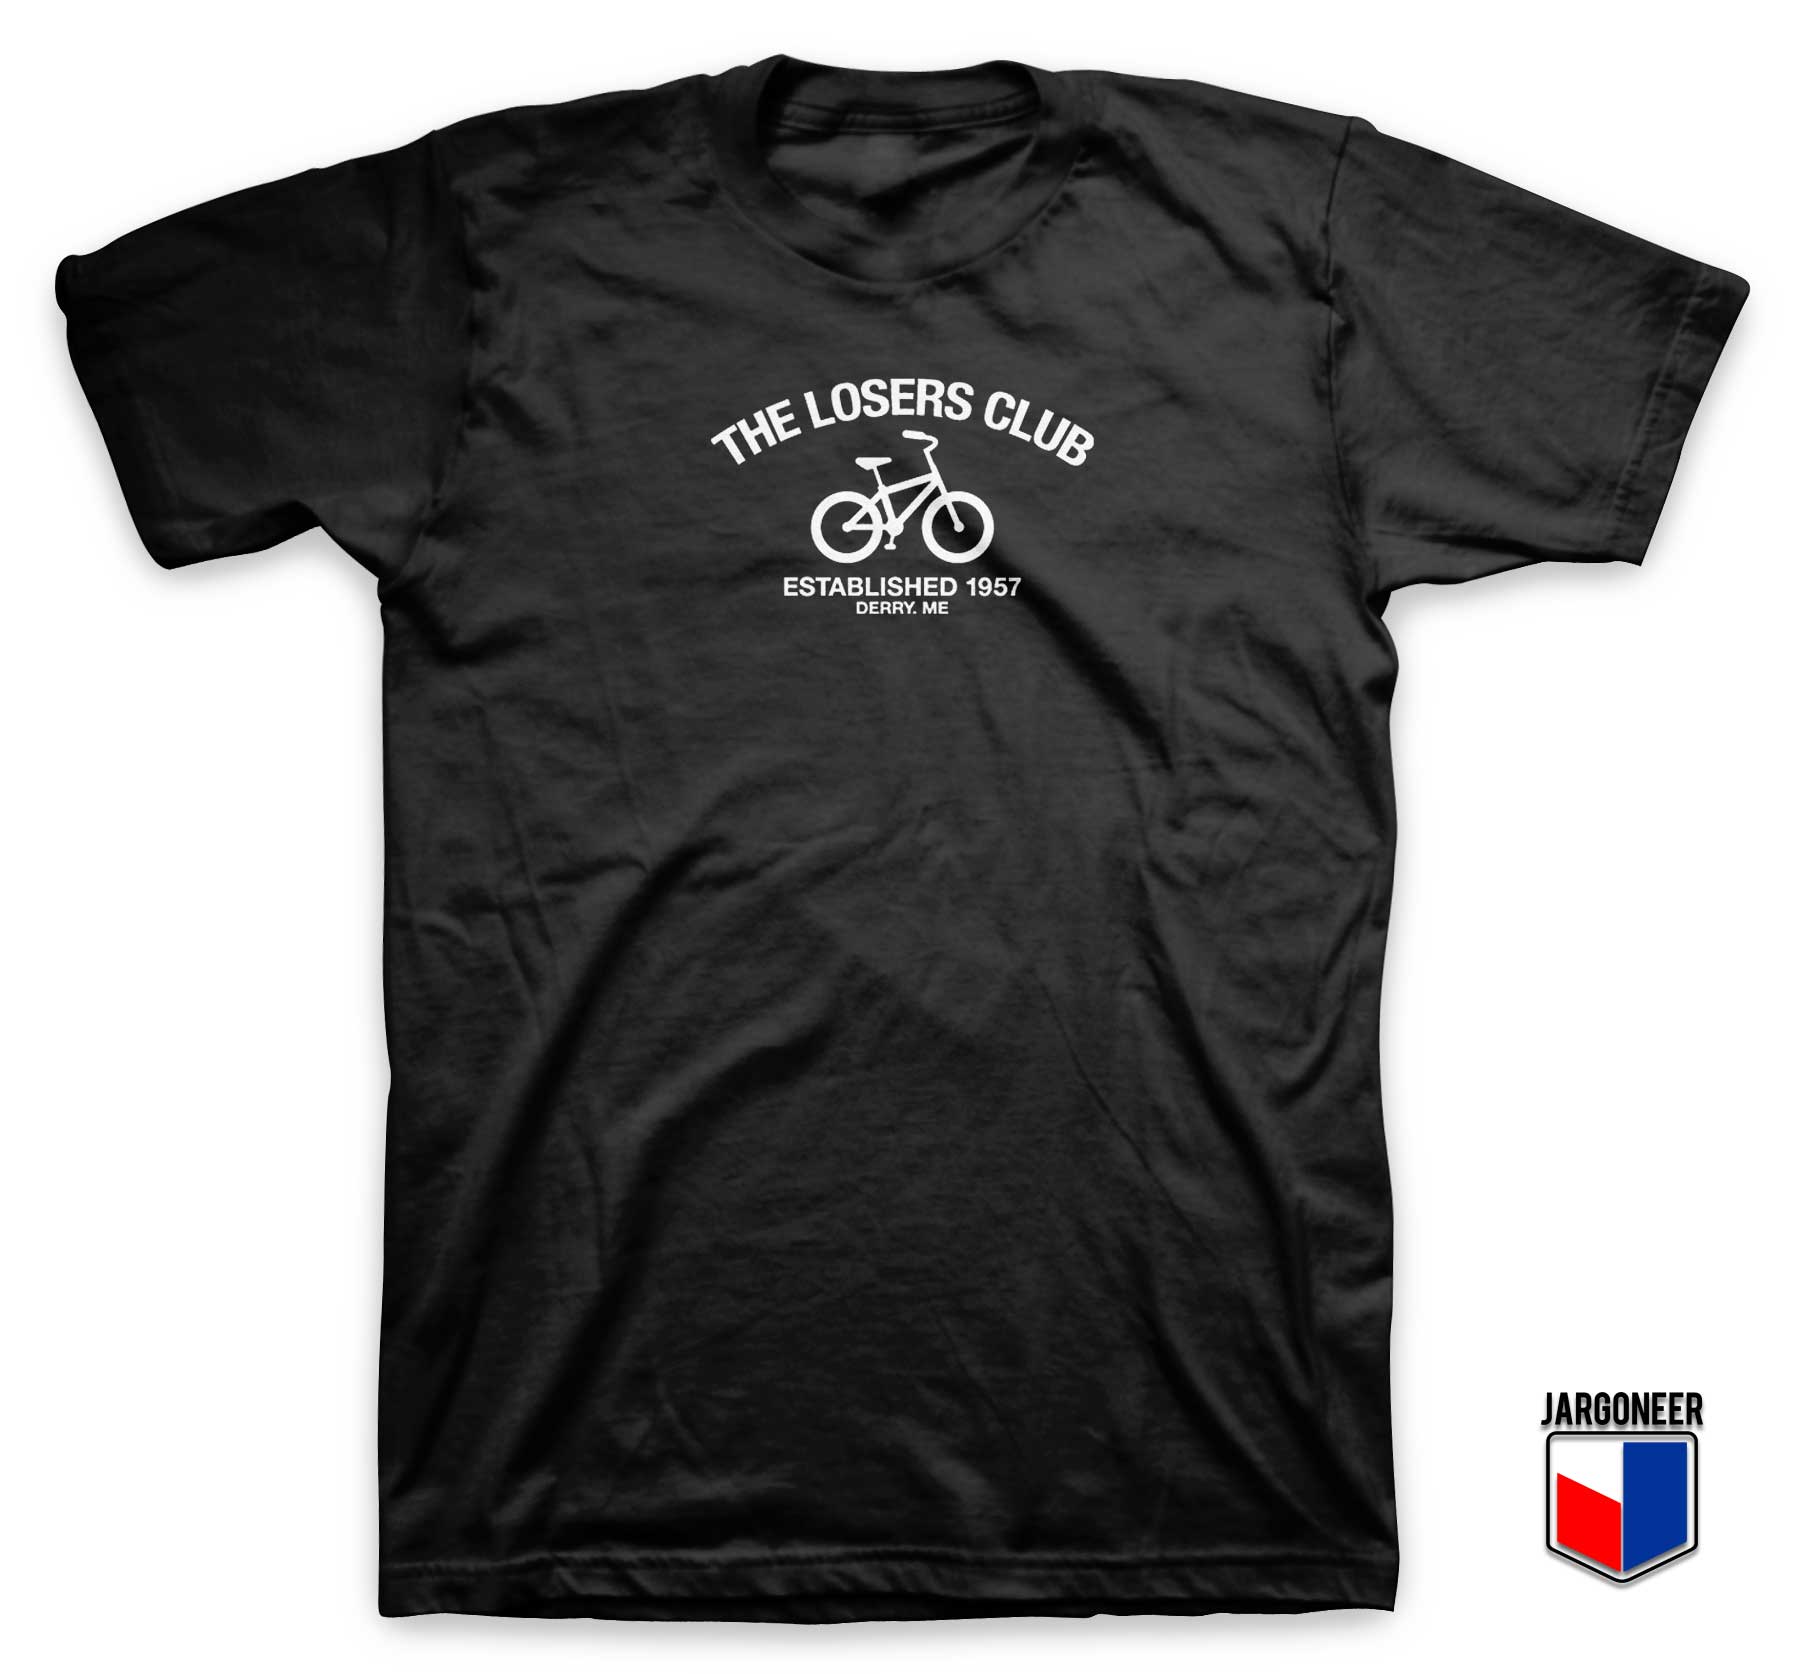 The Losers Club Est 1957 T Shirt - Shop Unique Graphic Cool Shirt Designs